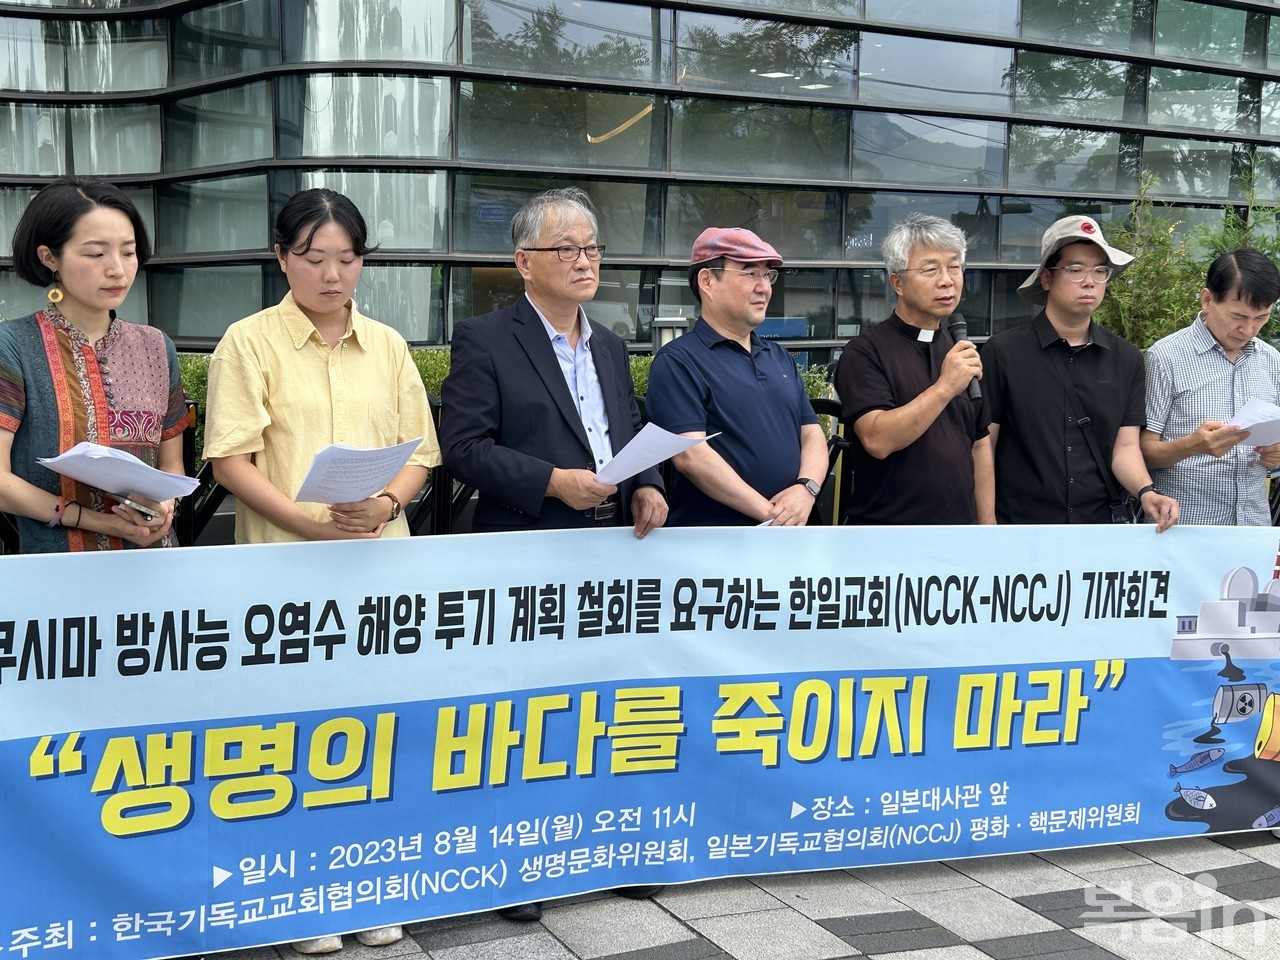 사진은 8월 14일 일본대사관 앞에서 가진 후쿠시마 방사능 우염수 해양 투기 계획 철회를 요구하는 한일 교회협의회 기자회견.